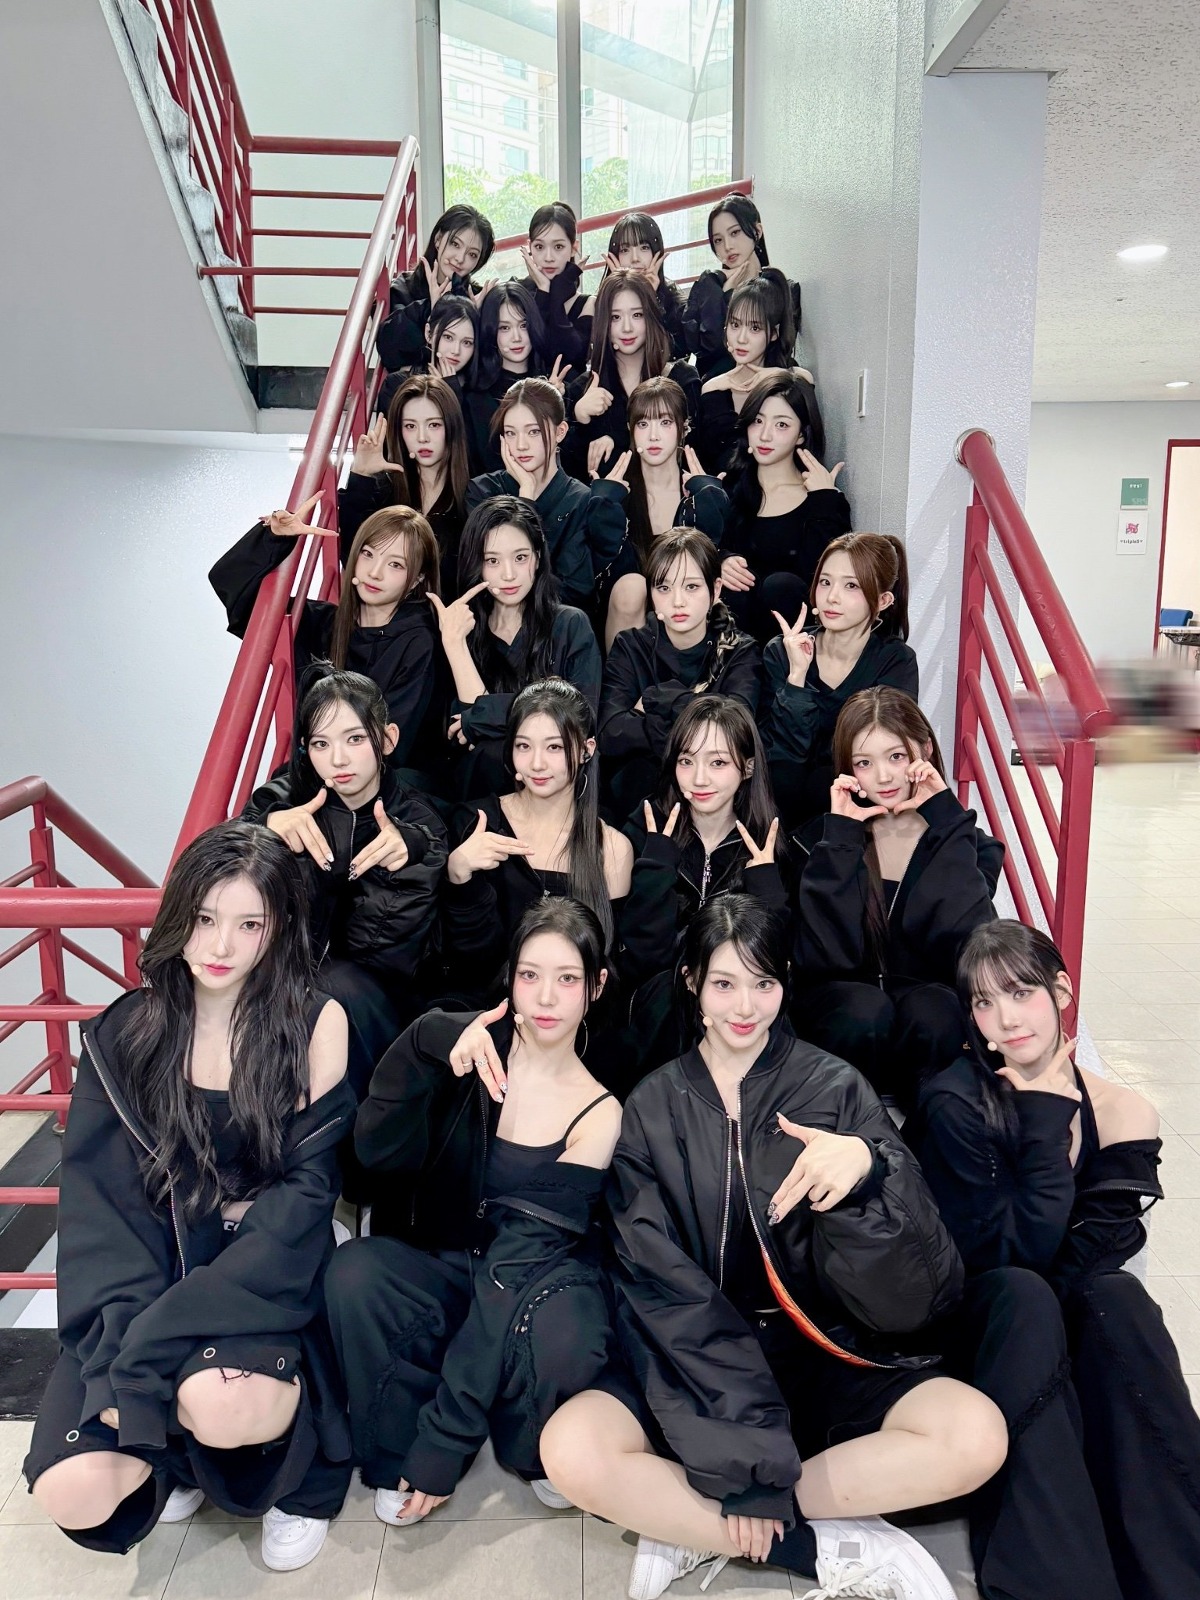 [閒聊] 有24位成員的女團在樓梯上拍照會發生的事